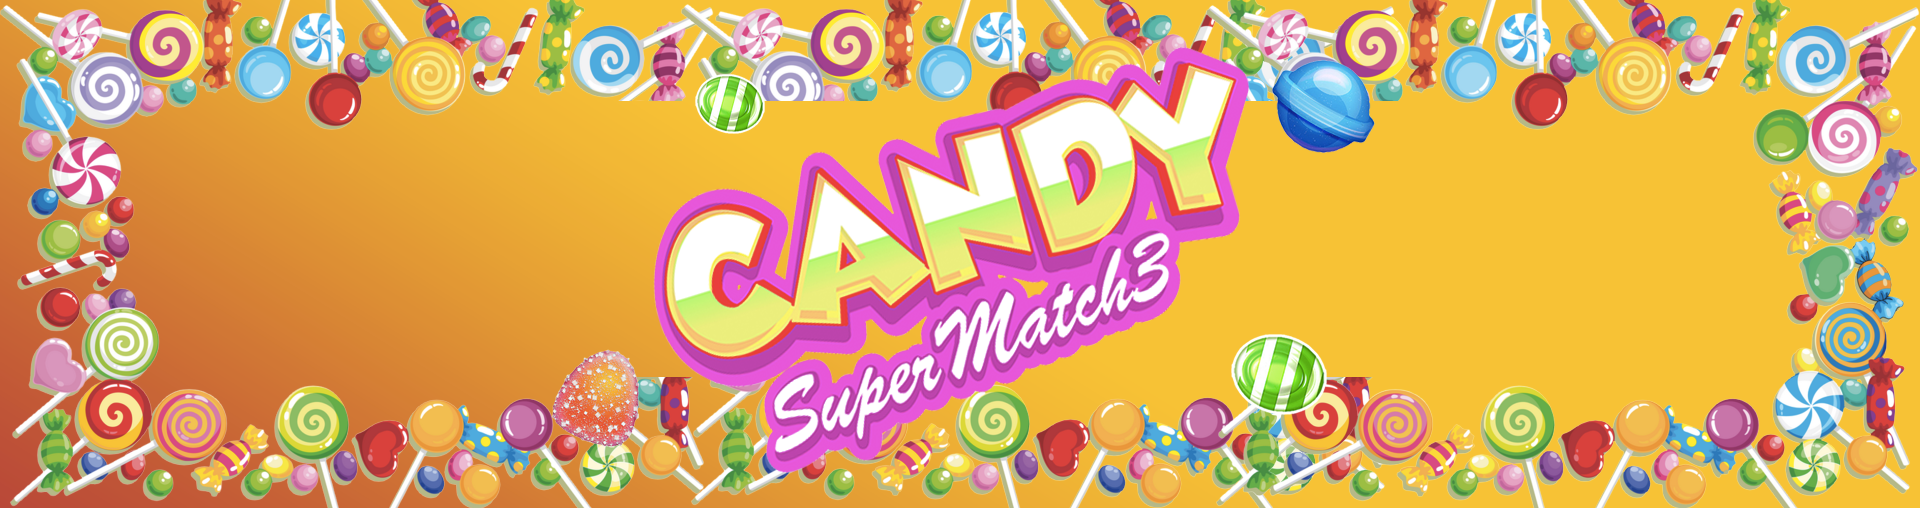 Candy Super Match 3